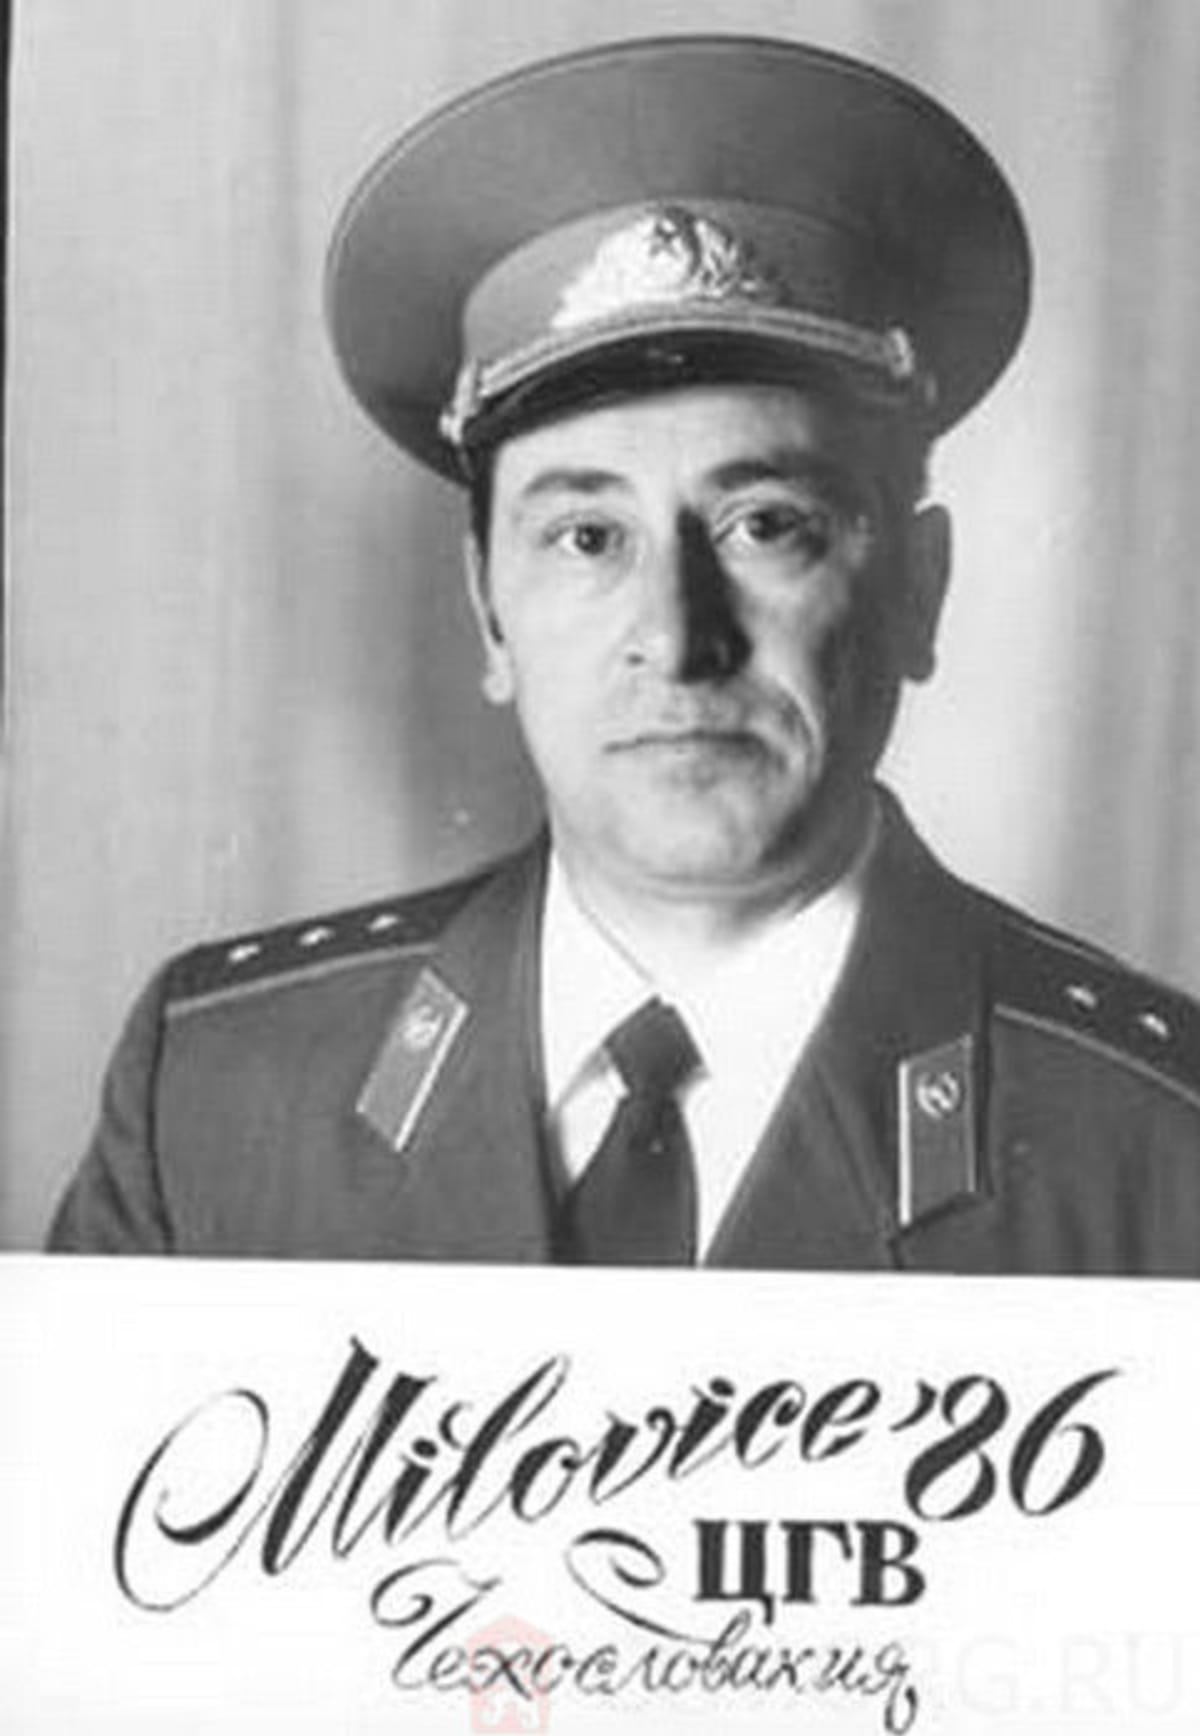 Milovice, pamětní snímek praporčíka A. V. Mamleva z roku 1986